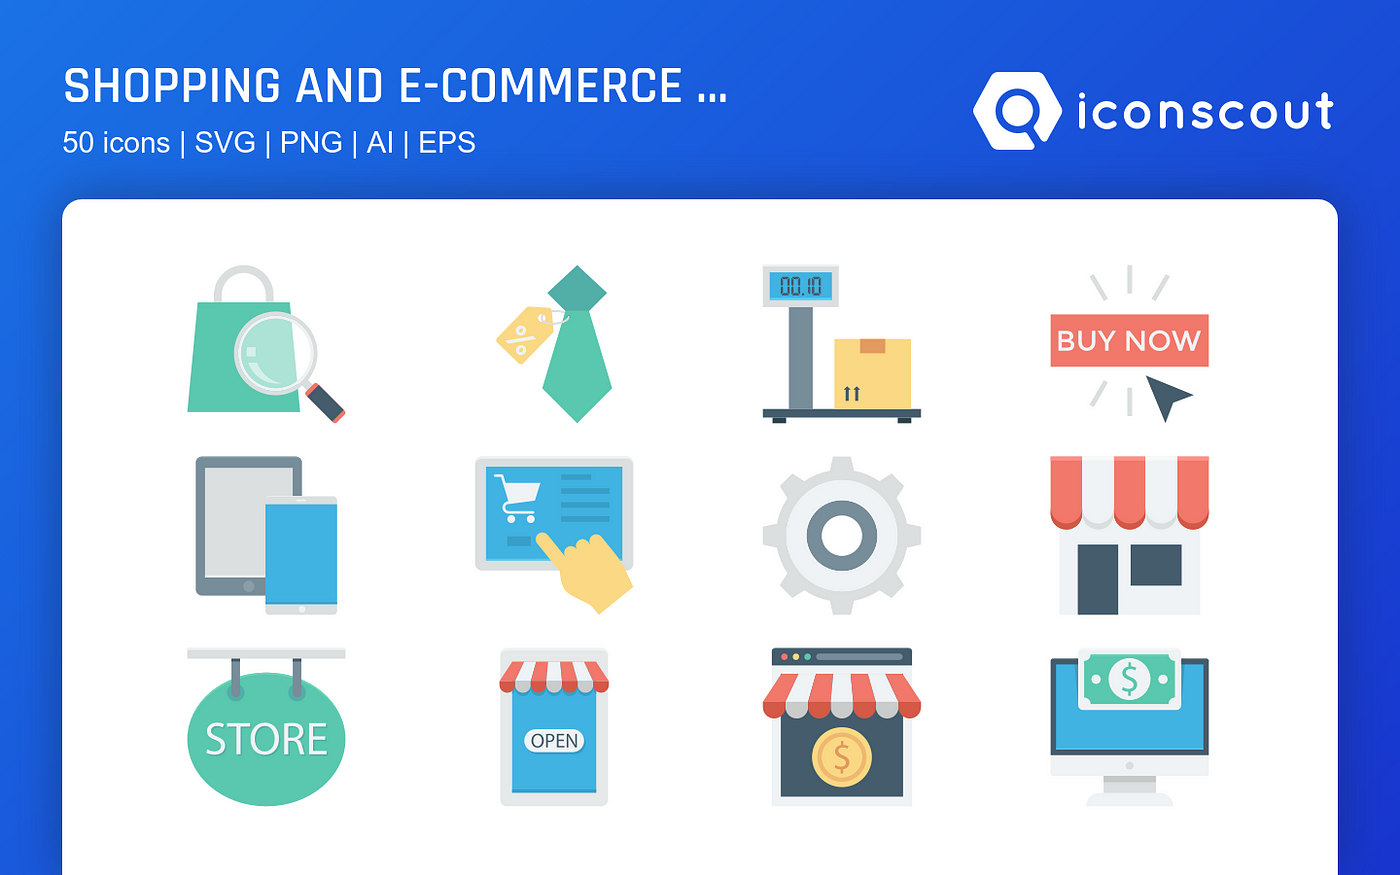 Catalogo - Ecommerce & Shopping Icons